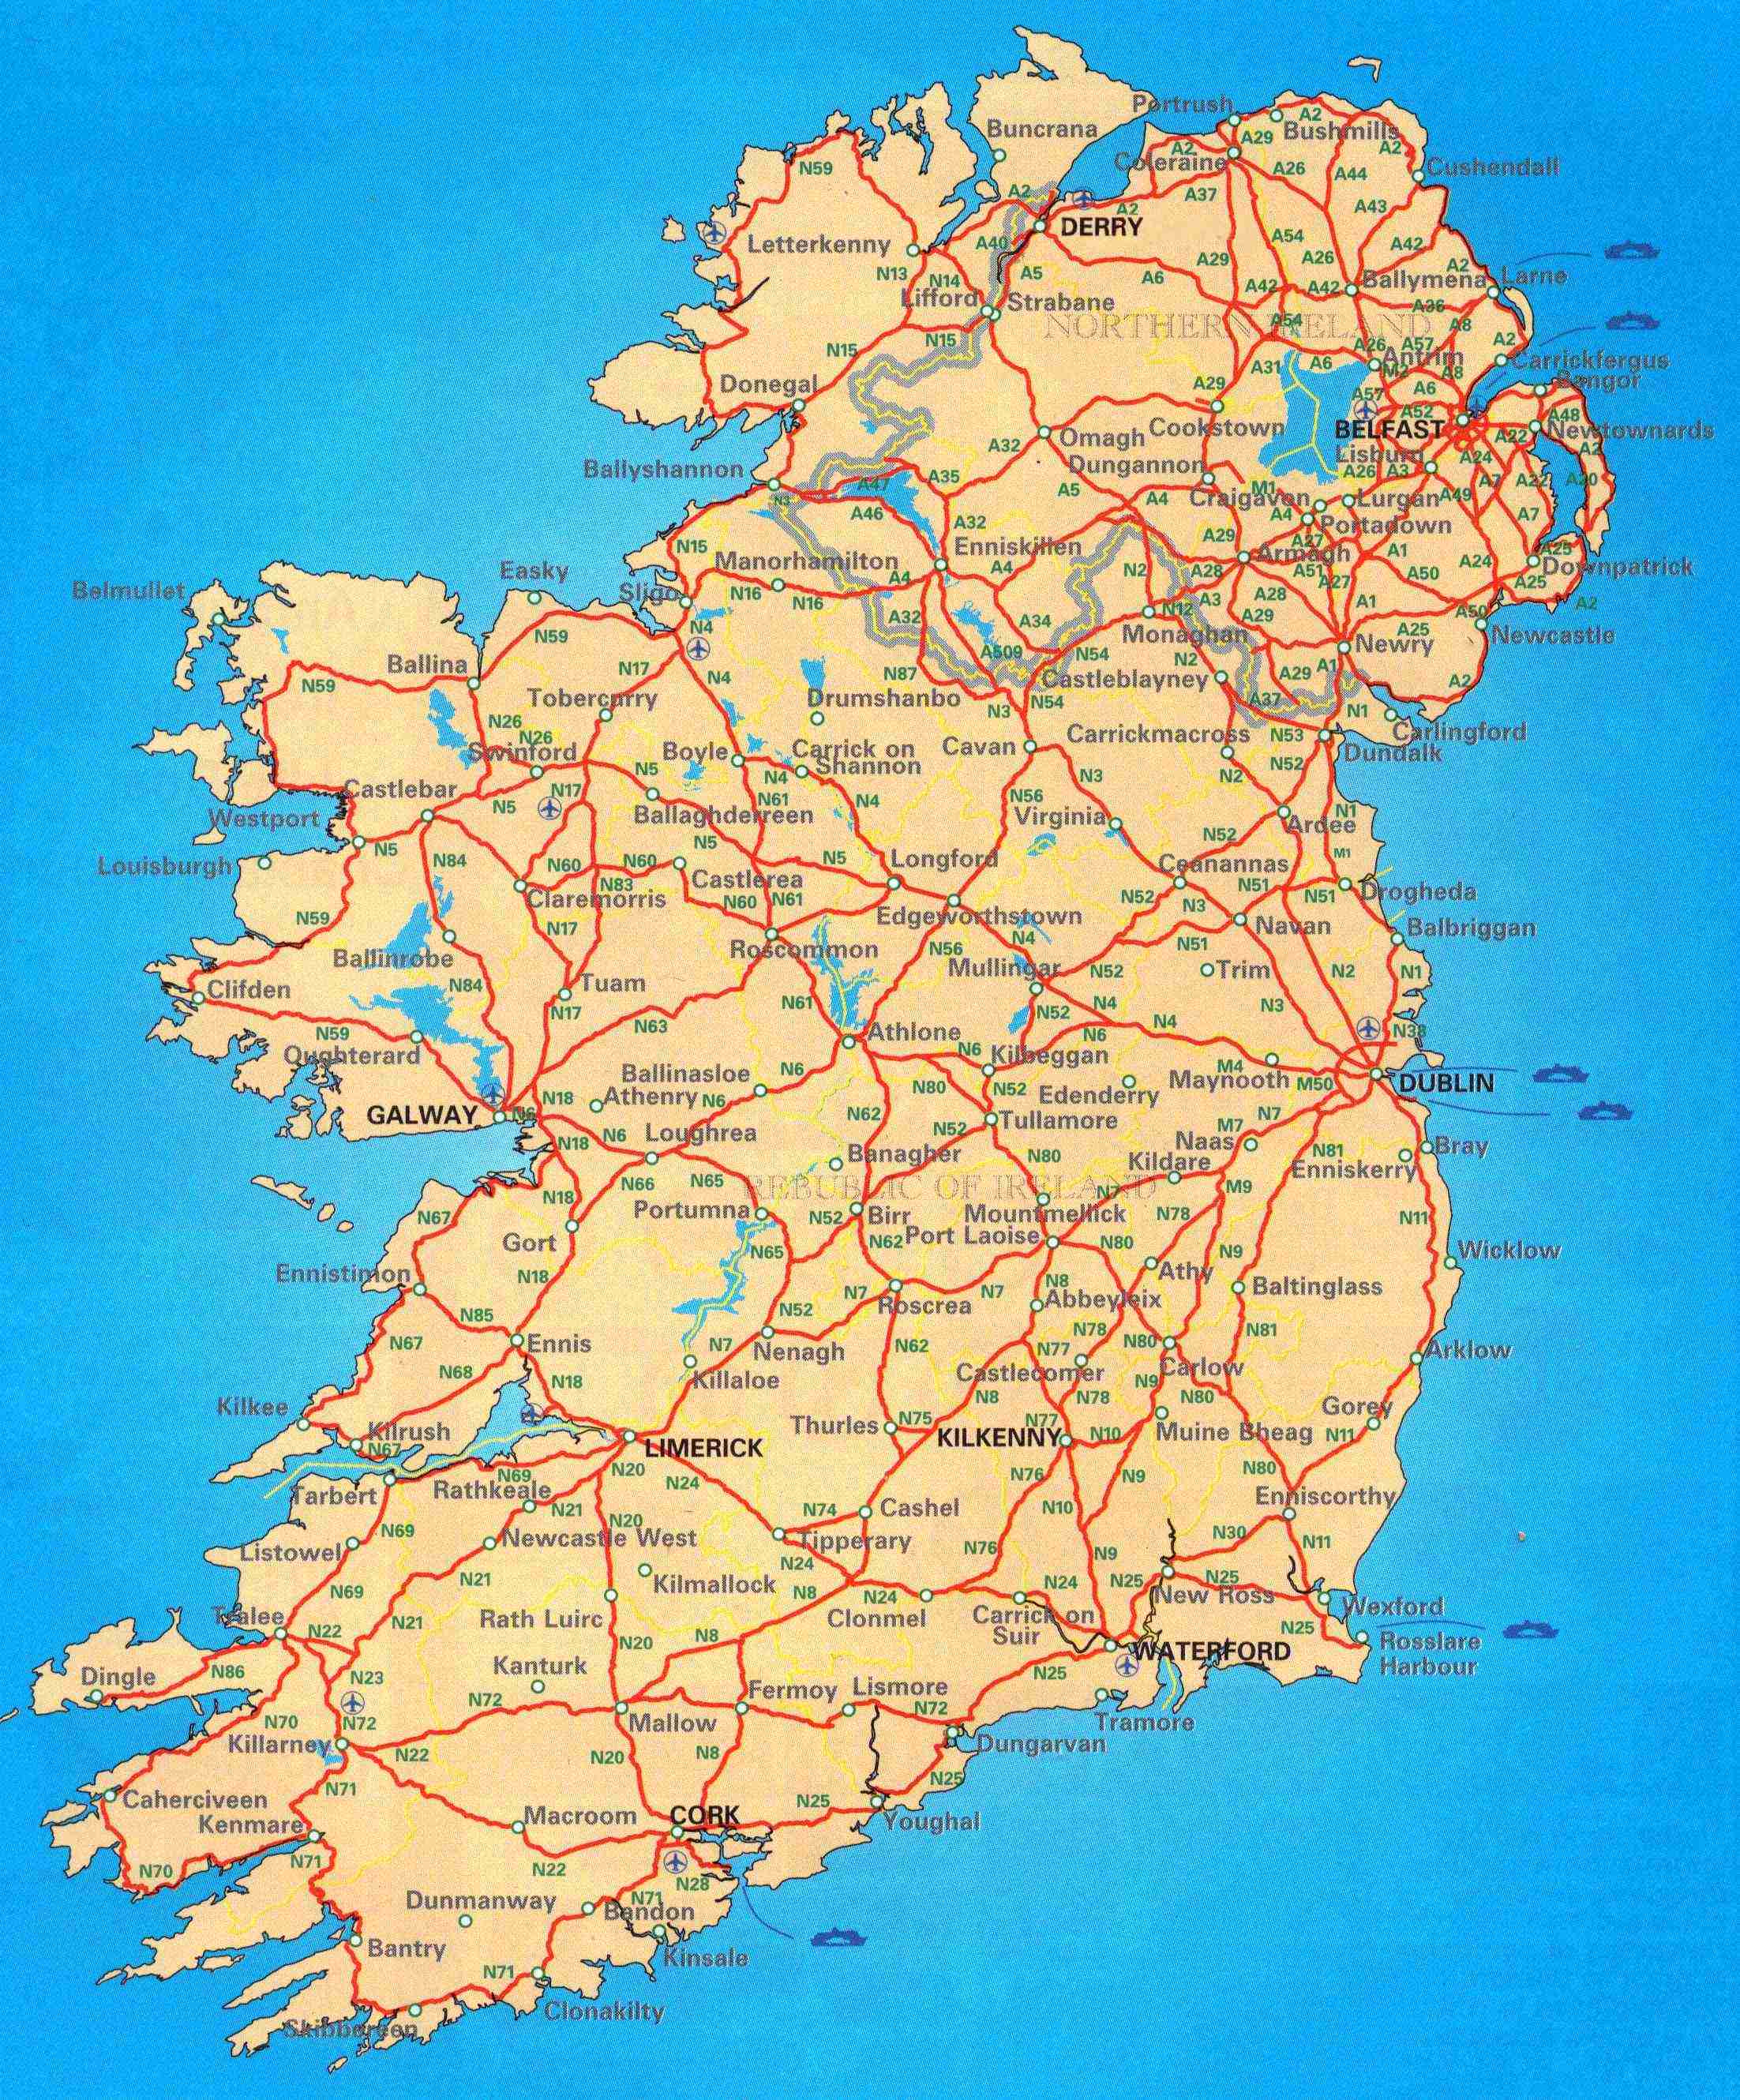 Large scale road map of Ireland | Ireland | Europe | Mapsland | Maps of ...